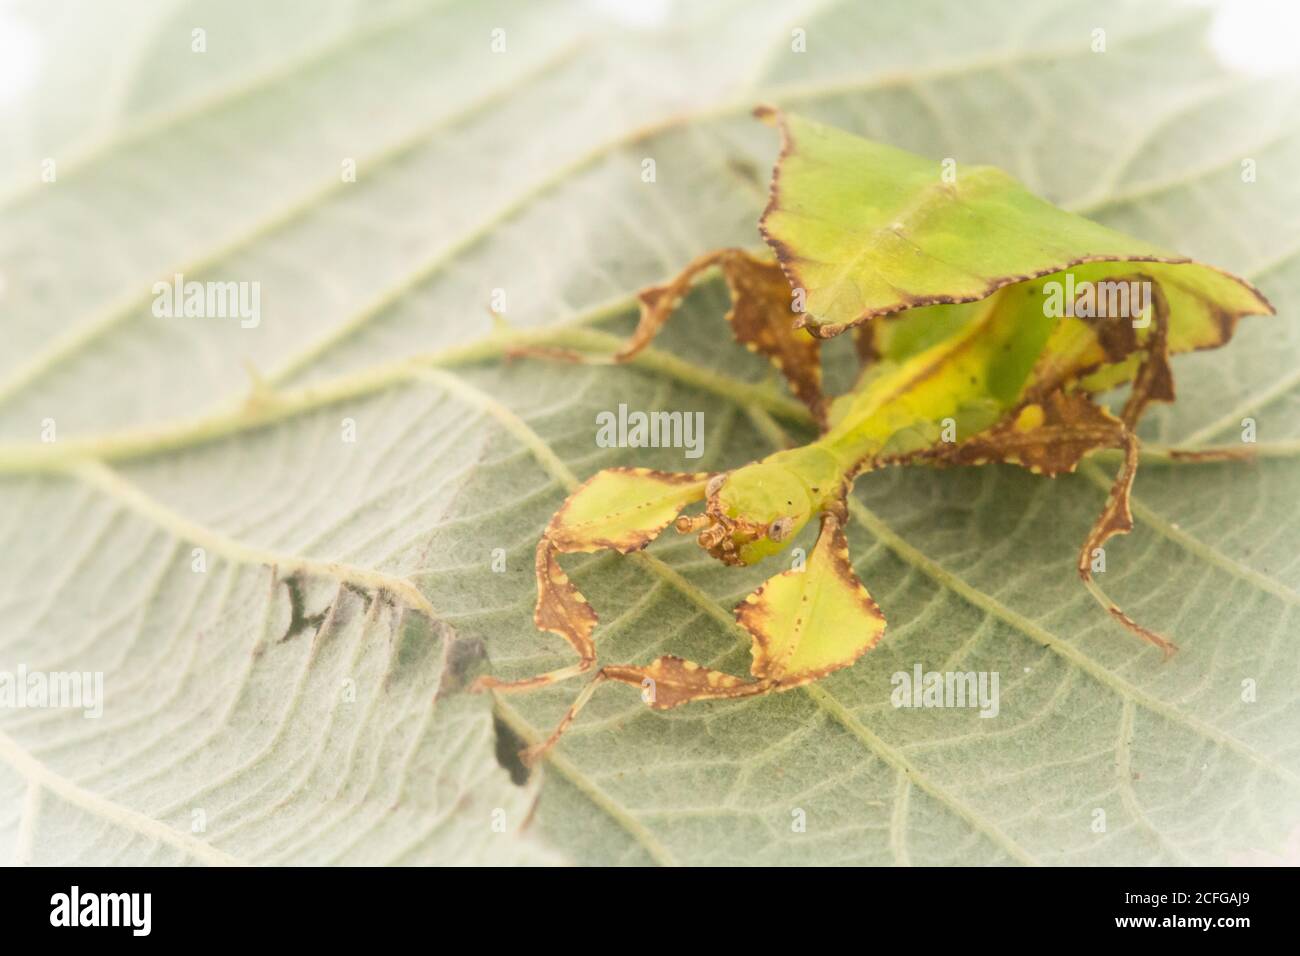 Un jeune insecte à feuilles géantes (Phyllium giganteum) attend sur la feuille de bramble qui est mange Banque D'Images